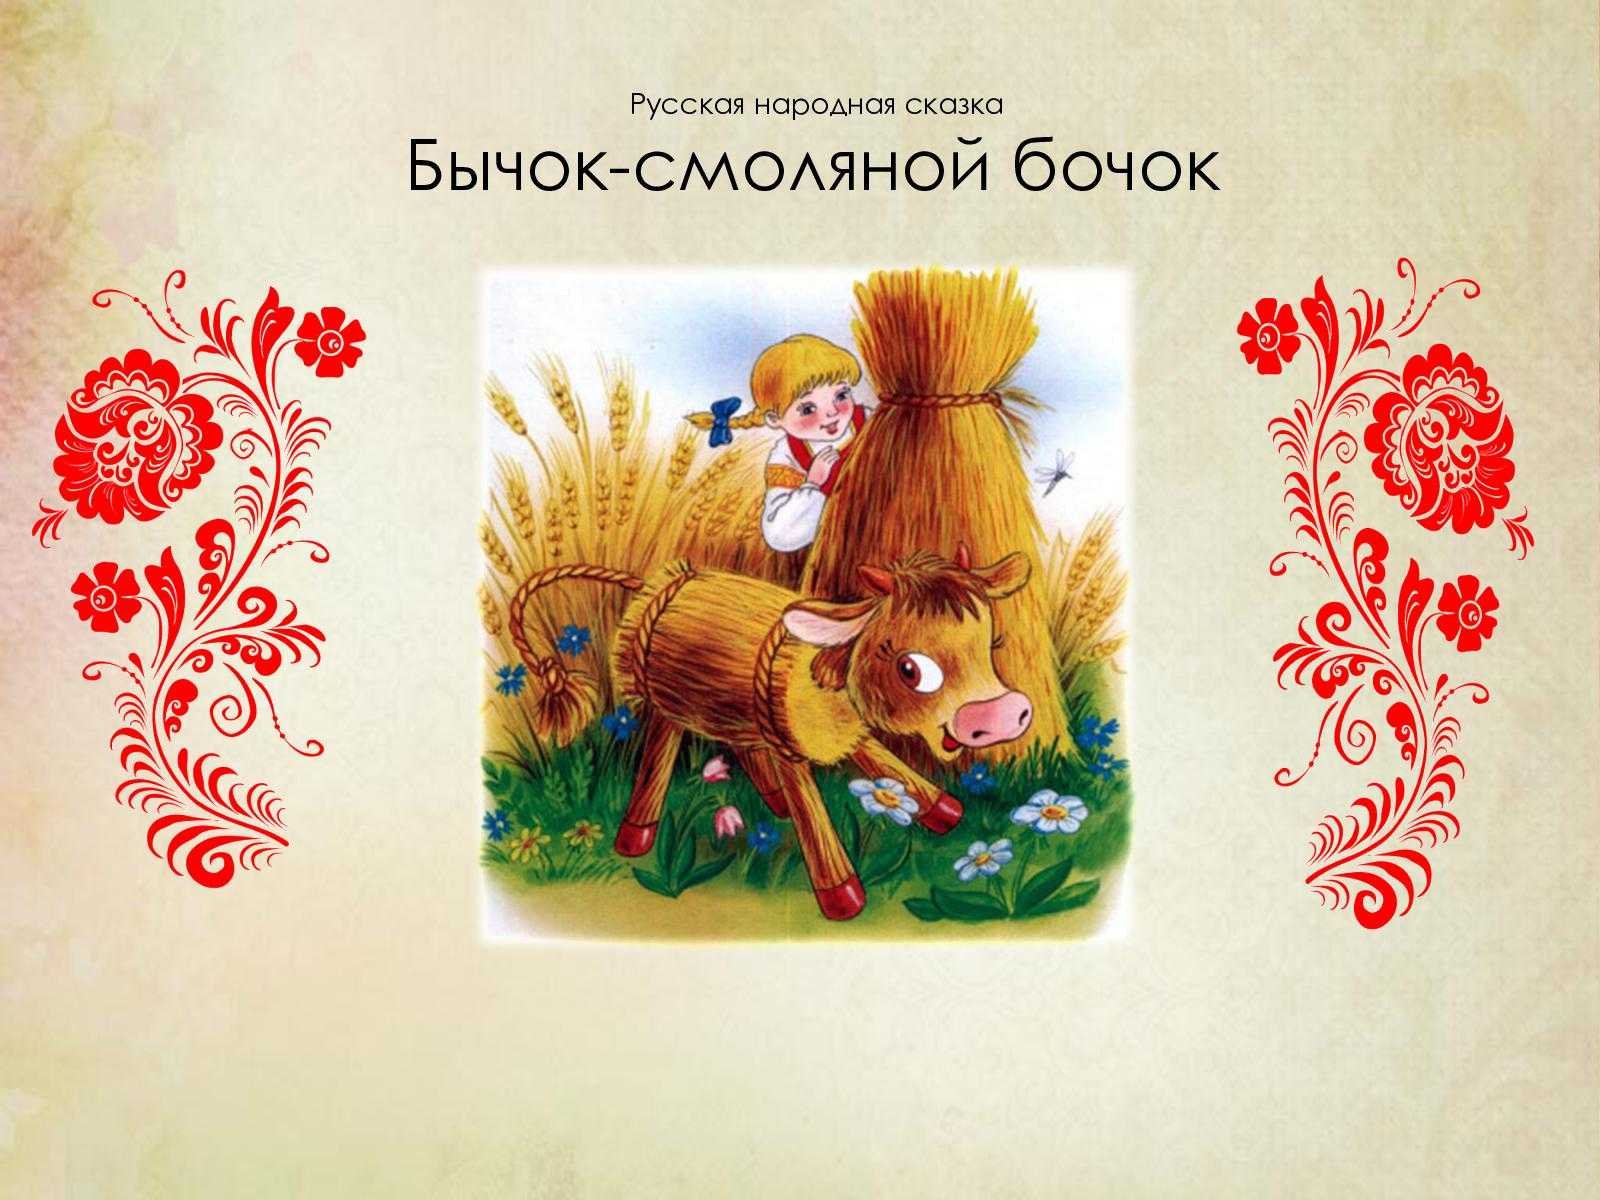 Читать сказку про бычка. Русские народные сказки смоляной бычок. Иллюстрации к сказке бычок смоляной бочок для детей. Русские народные сказки соломенный бычок. Русские народные сказки бычок смоляной бочок.